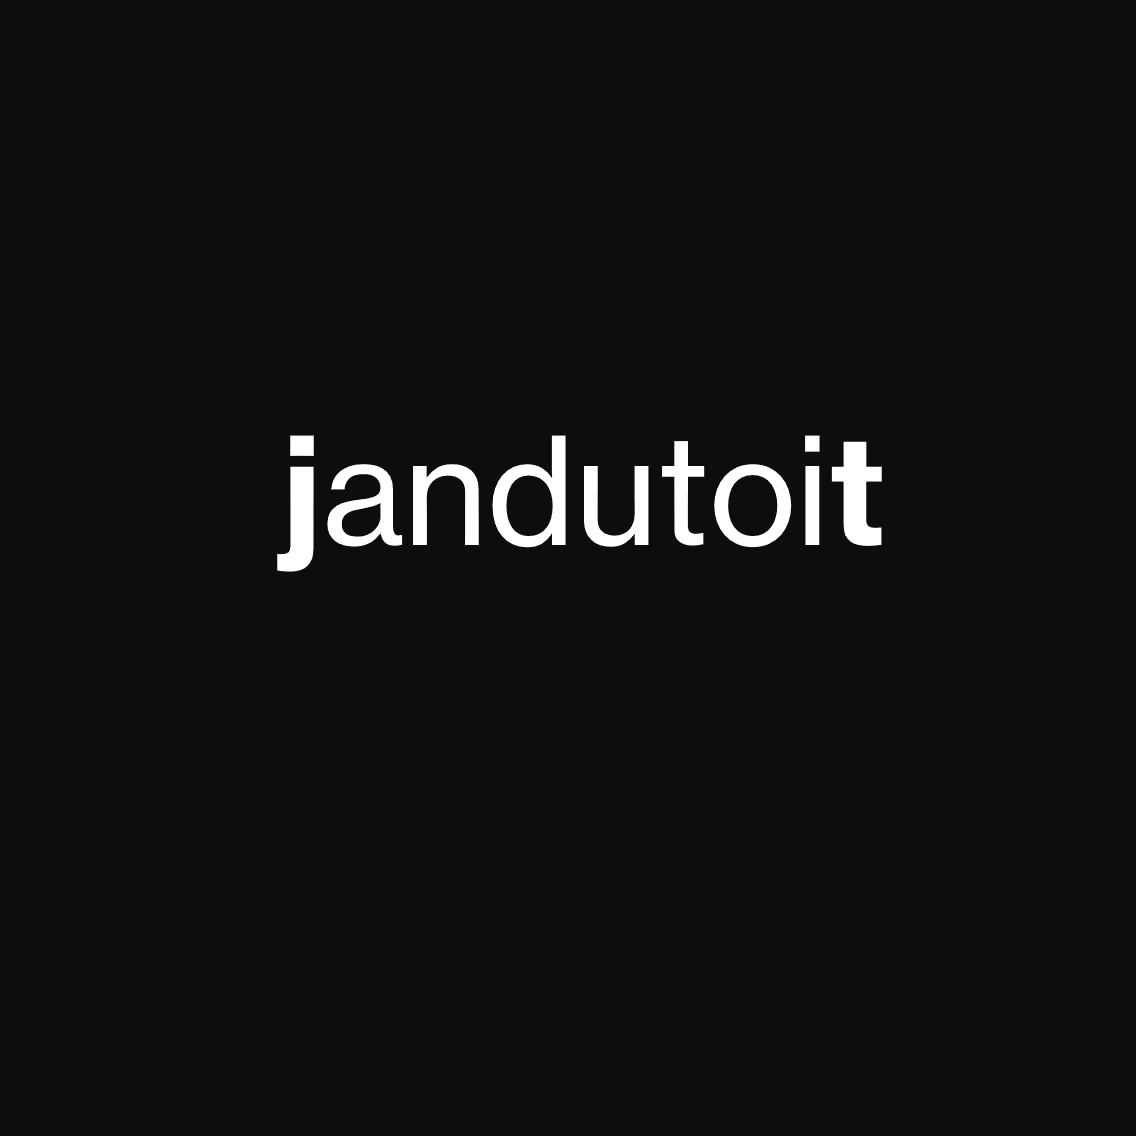 Jan du Toit & Associates logo